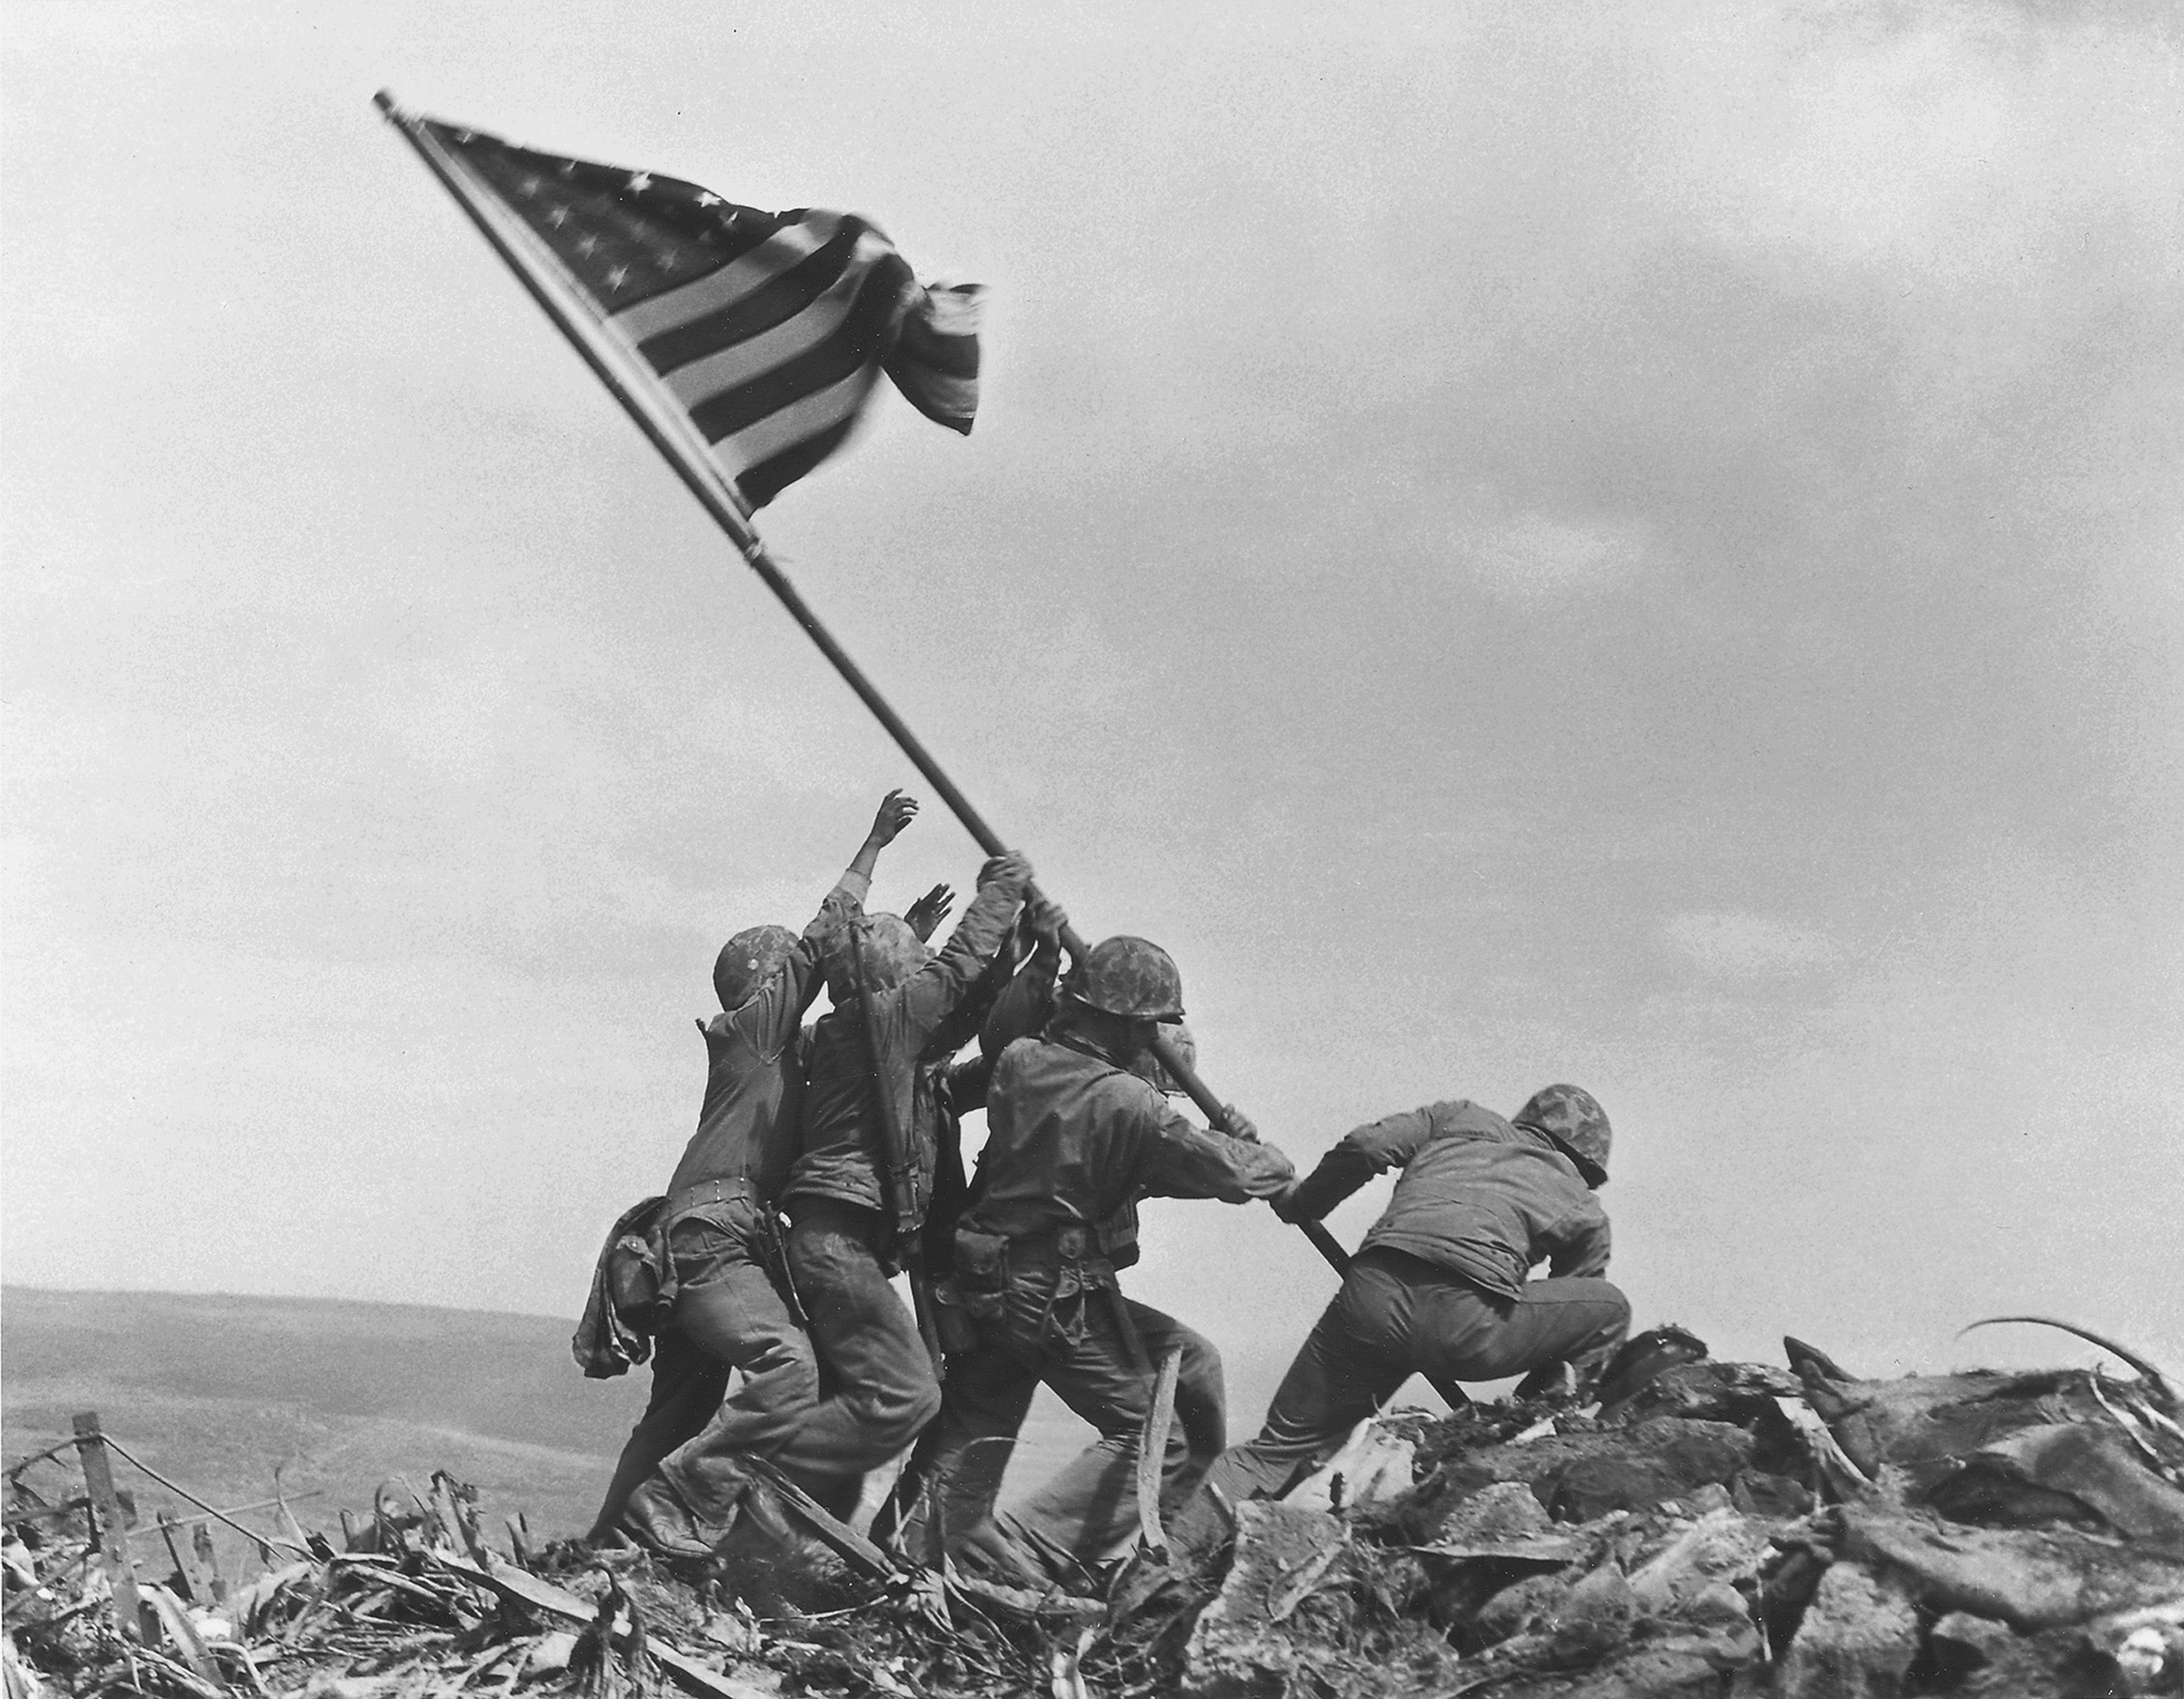 Iwo Jima Photo Identities